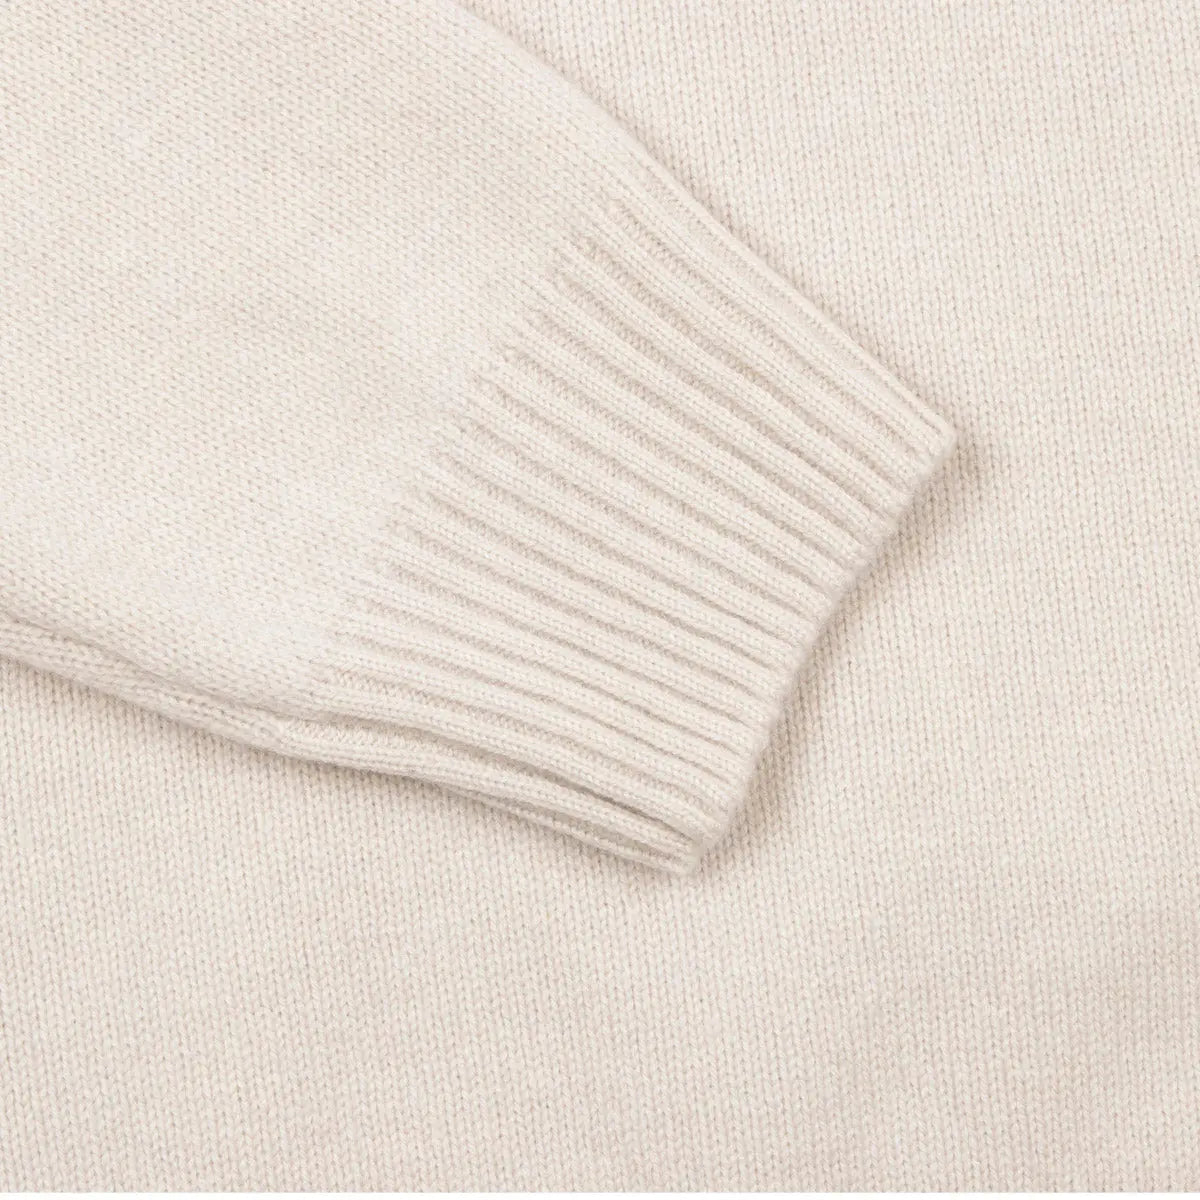 Oatmeal Wool & Cashmere-Blend Half-Zip Sweater  Robert Old   